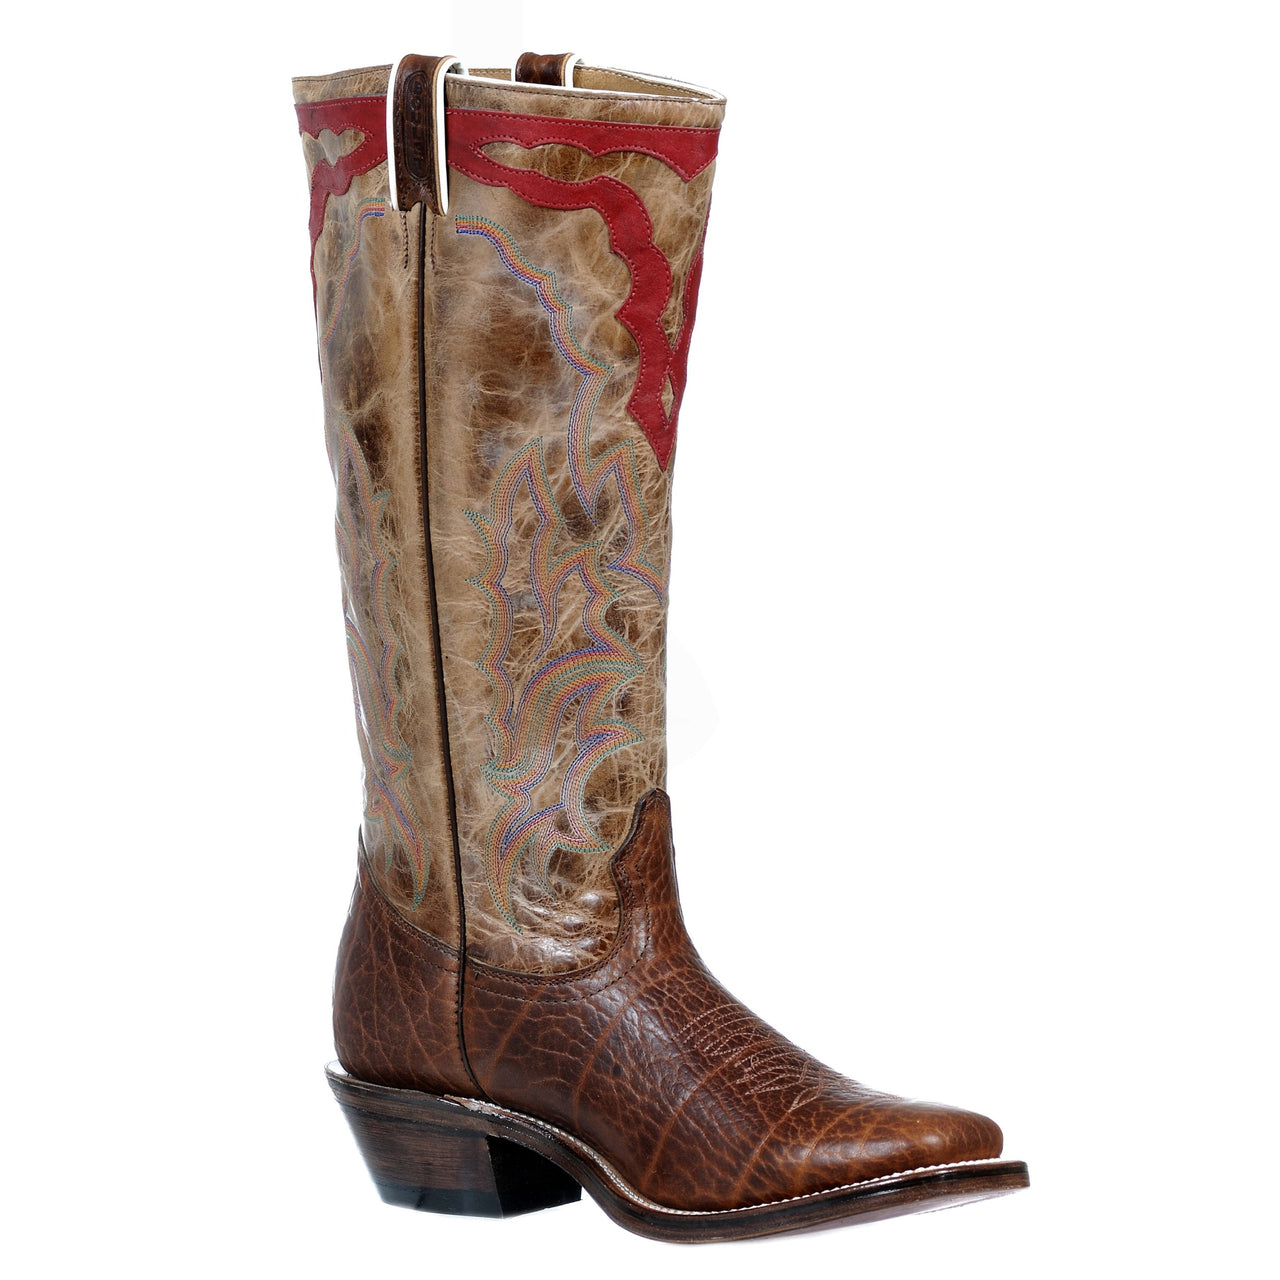 Boulet Men's Wide Square Toe Western Boots - Cognac Pent Shoulder/Deerlite Butterscotch & Red